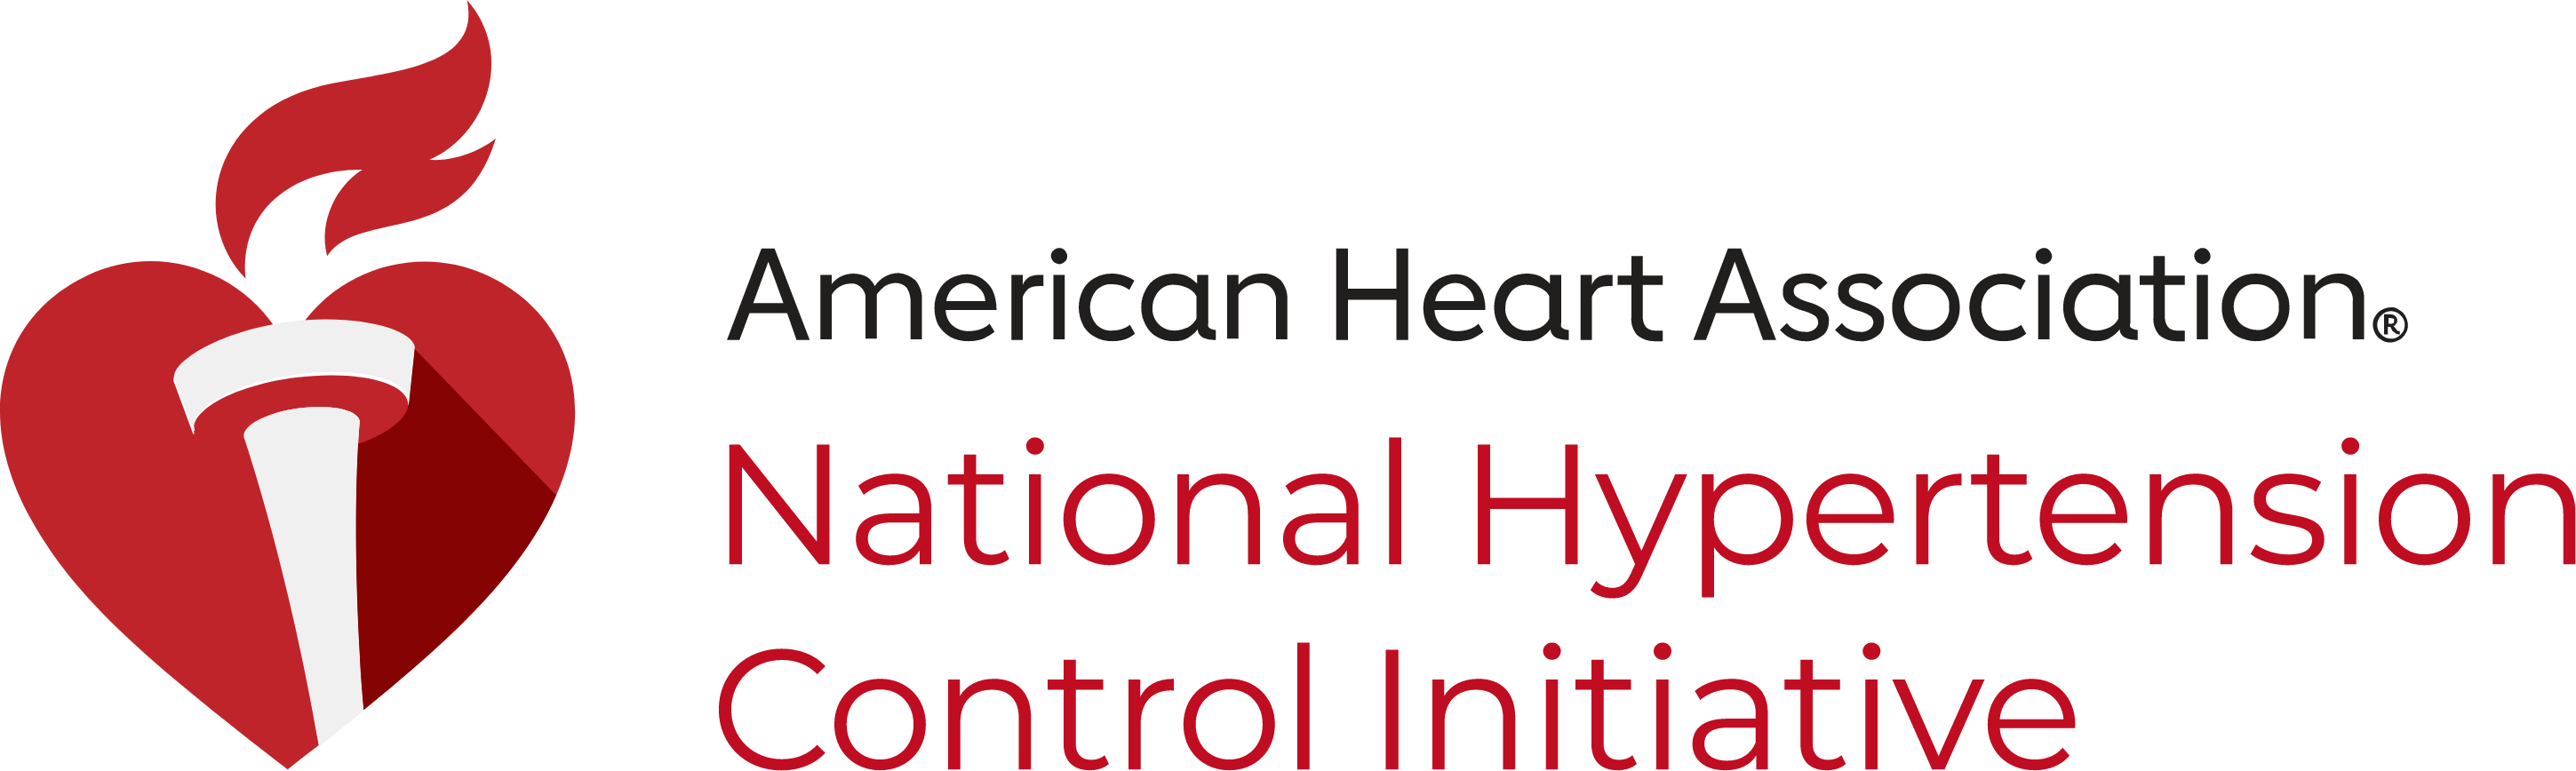 美国心脏协会-国家高血压控制倡议标志